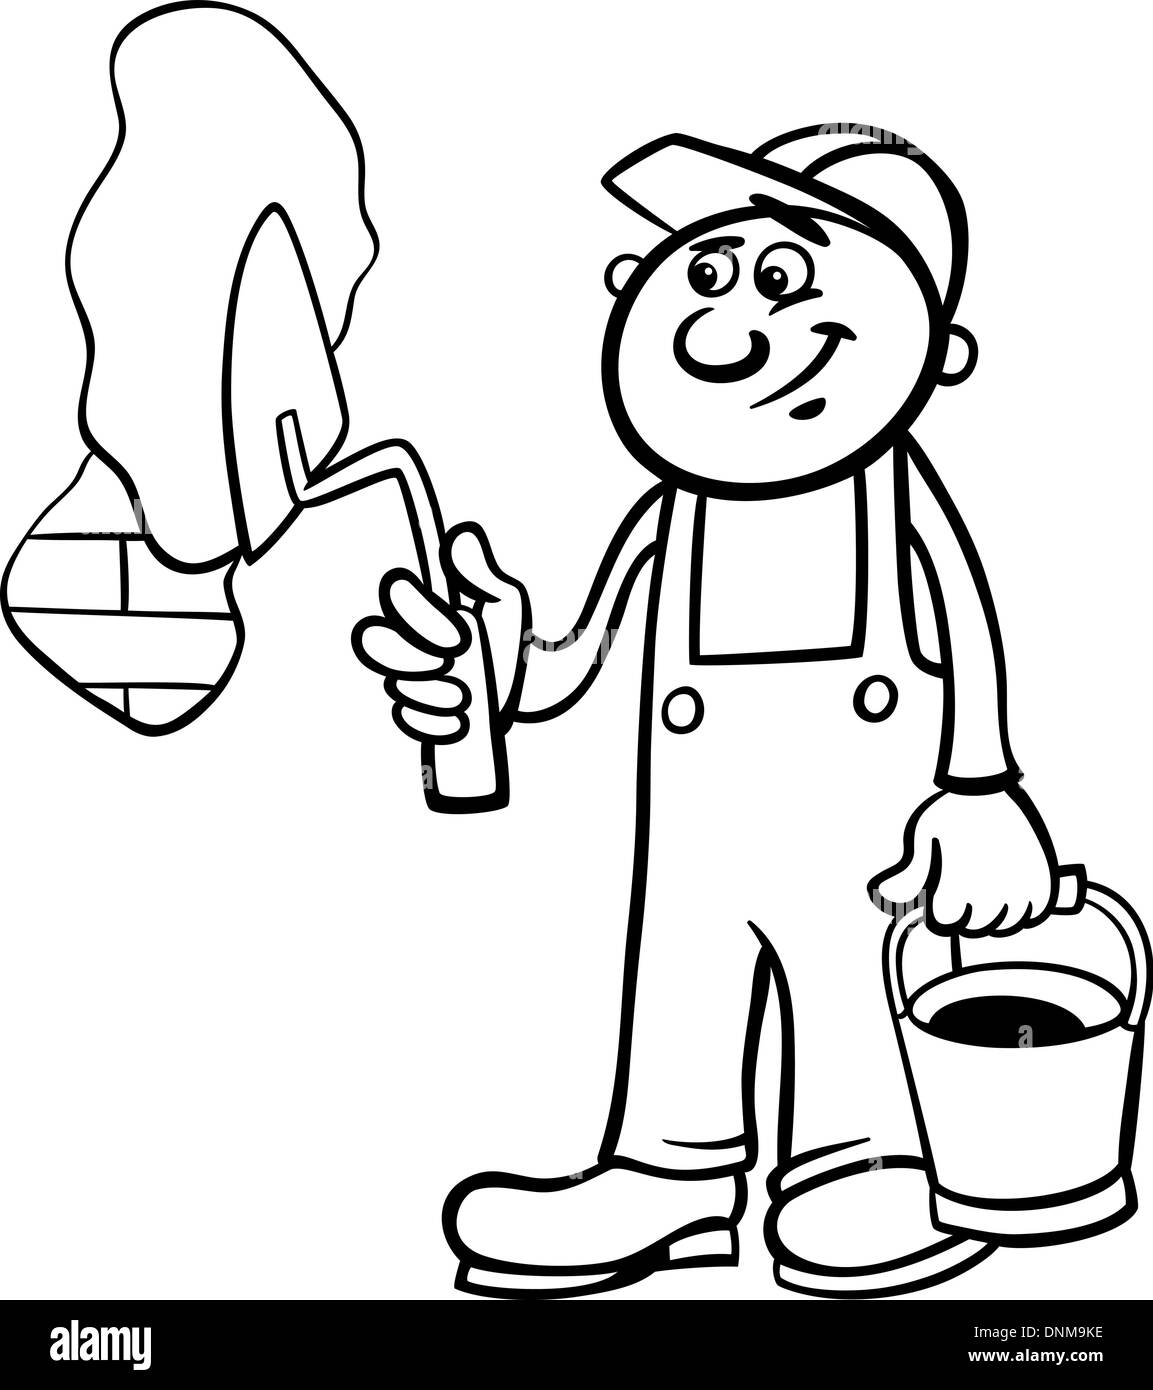 Schwarz / Weiß Cartoon Illustration Mann Arbeitskraft oder Arbeiter mit Spachtel Putz Mauer für Kinder Malbuch Stock Vektor